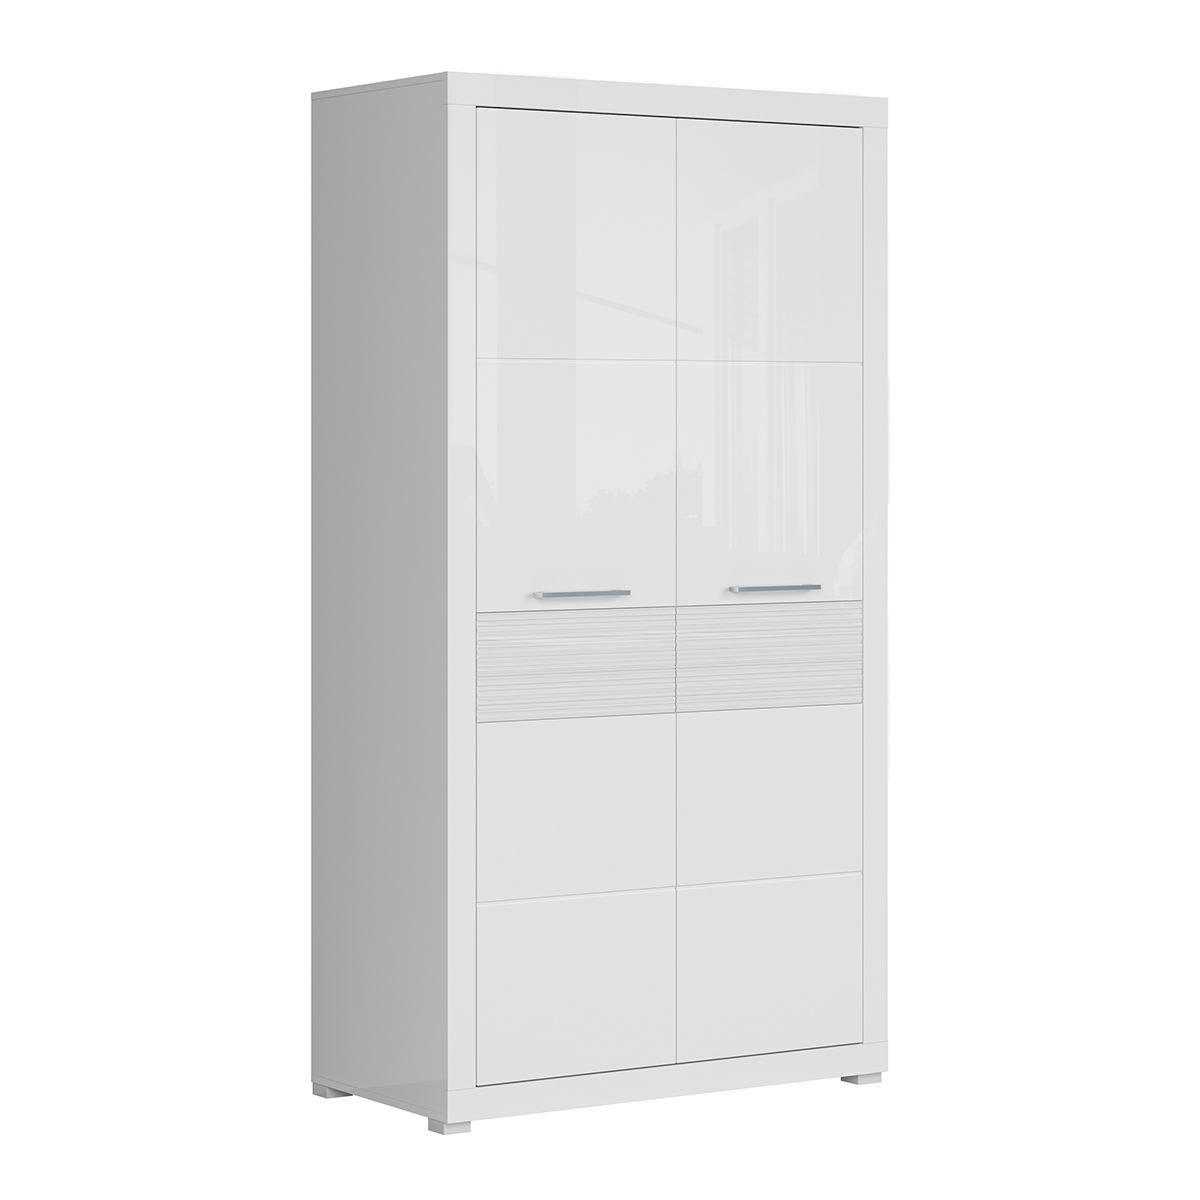 petits-meubles-S428-SZF2D-BIP-ulysse-armoire-2-portes-blanc-lanque-2